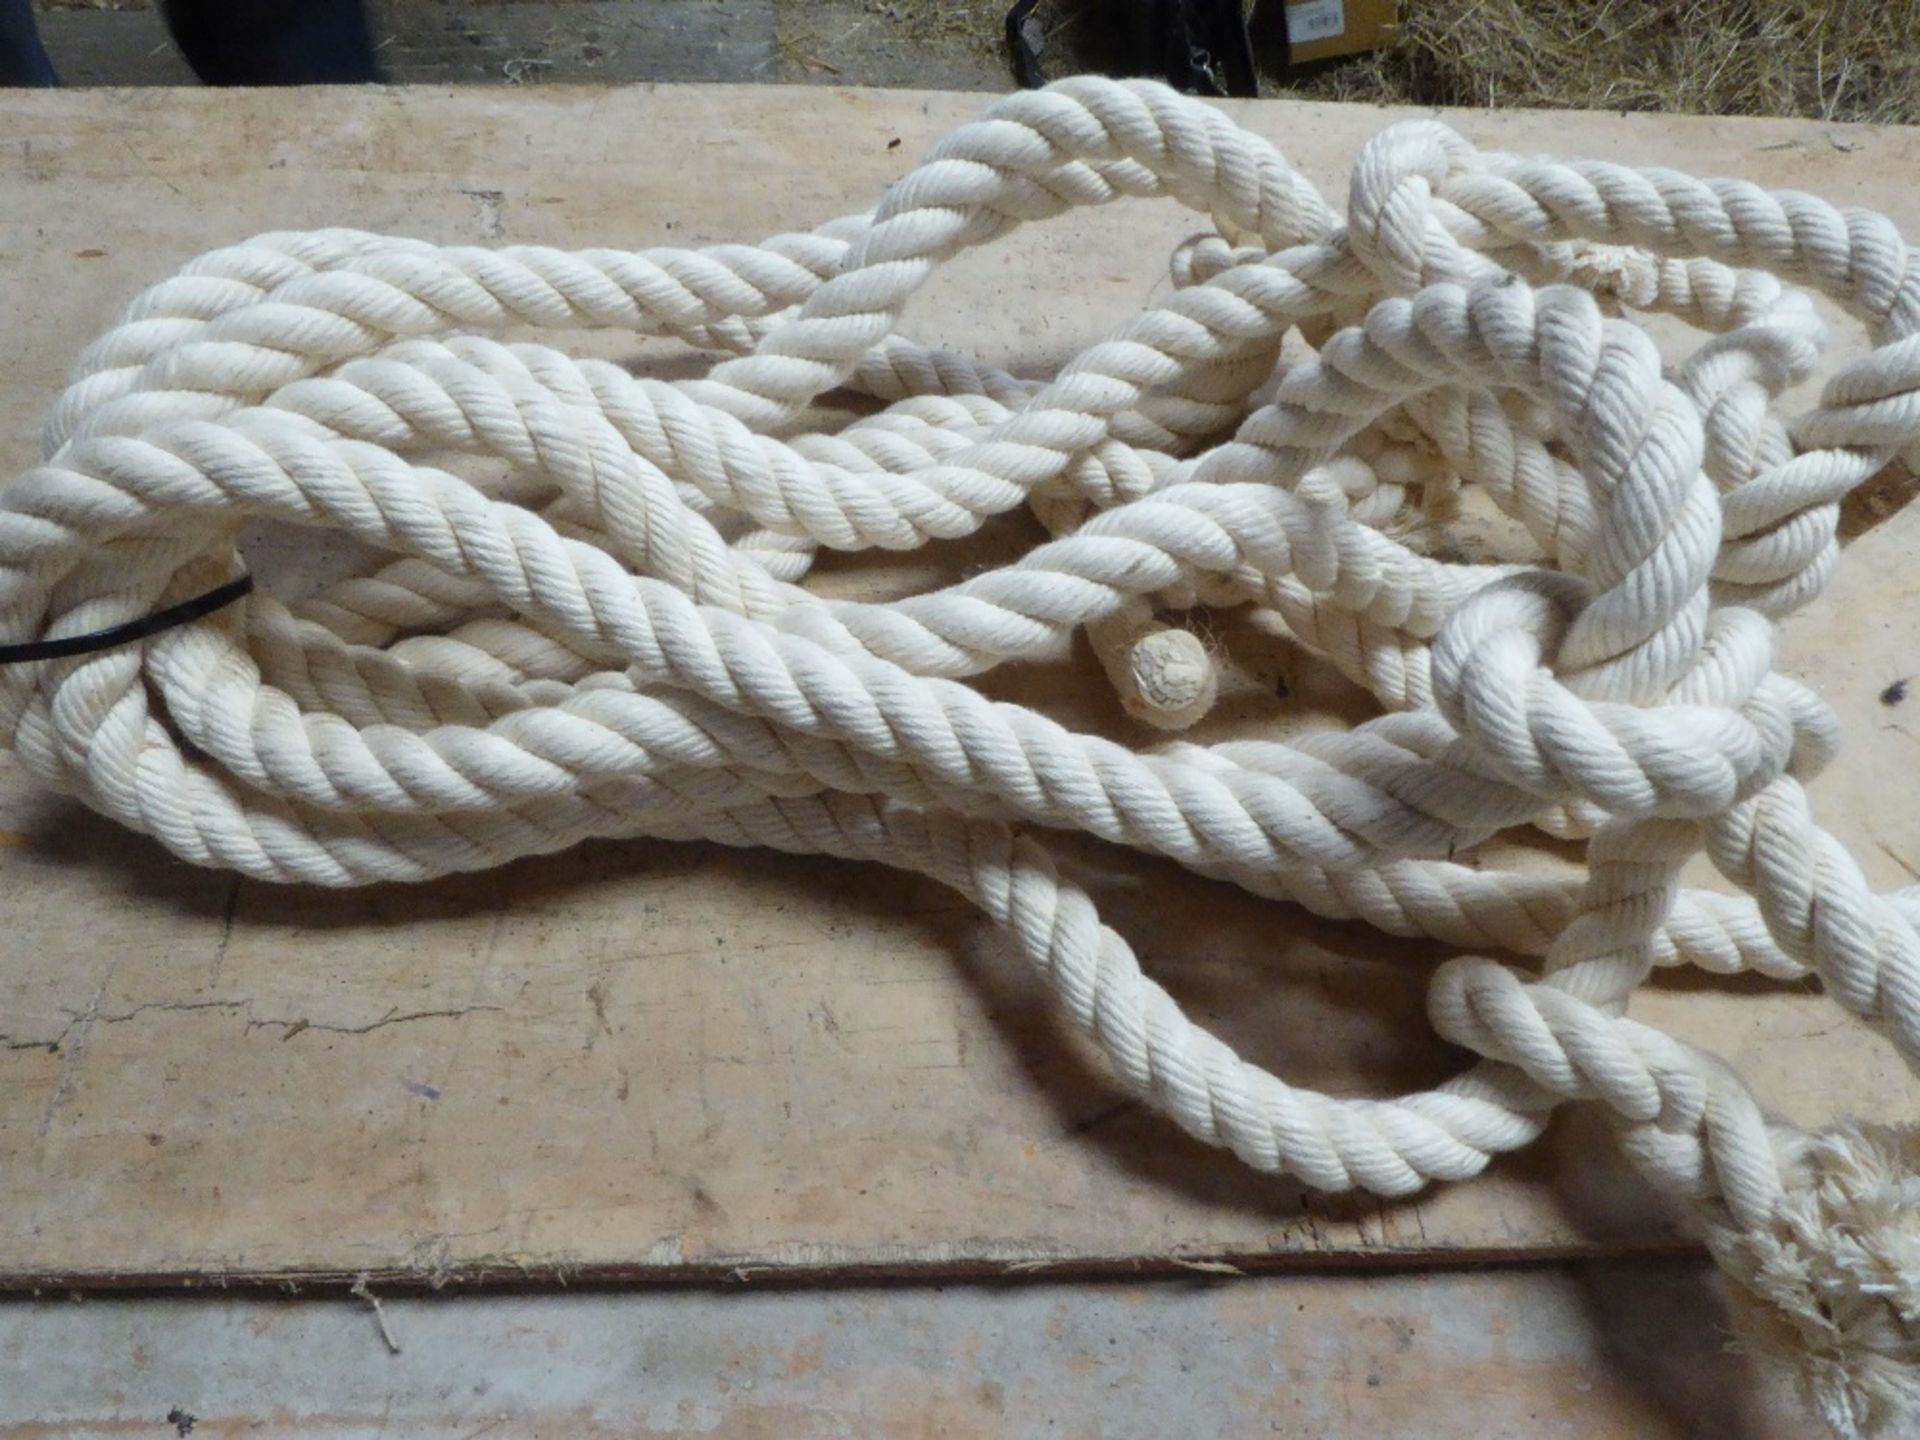 Three white rope halters